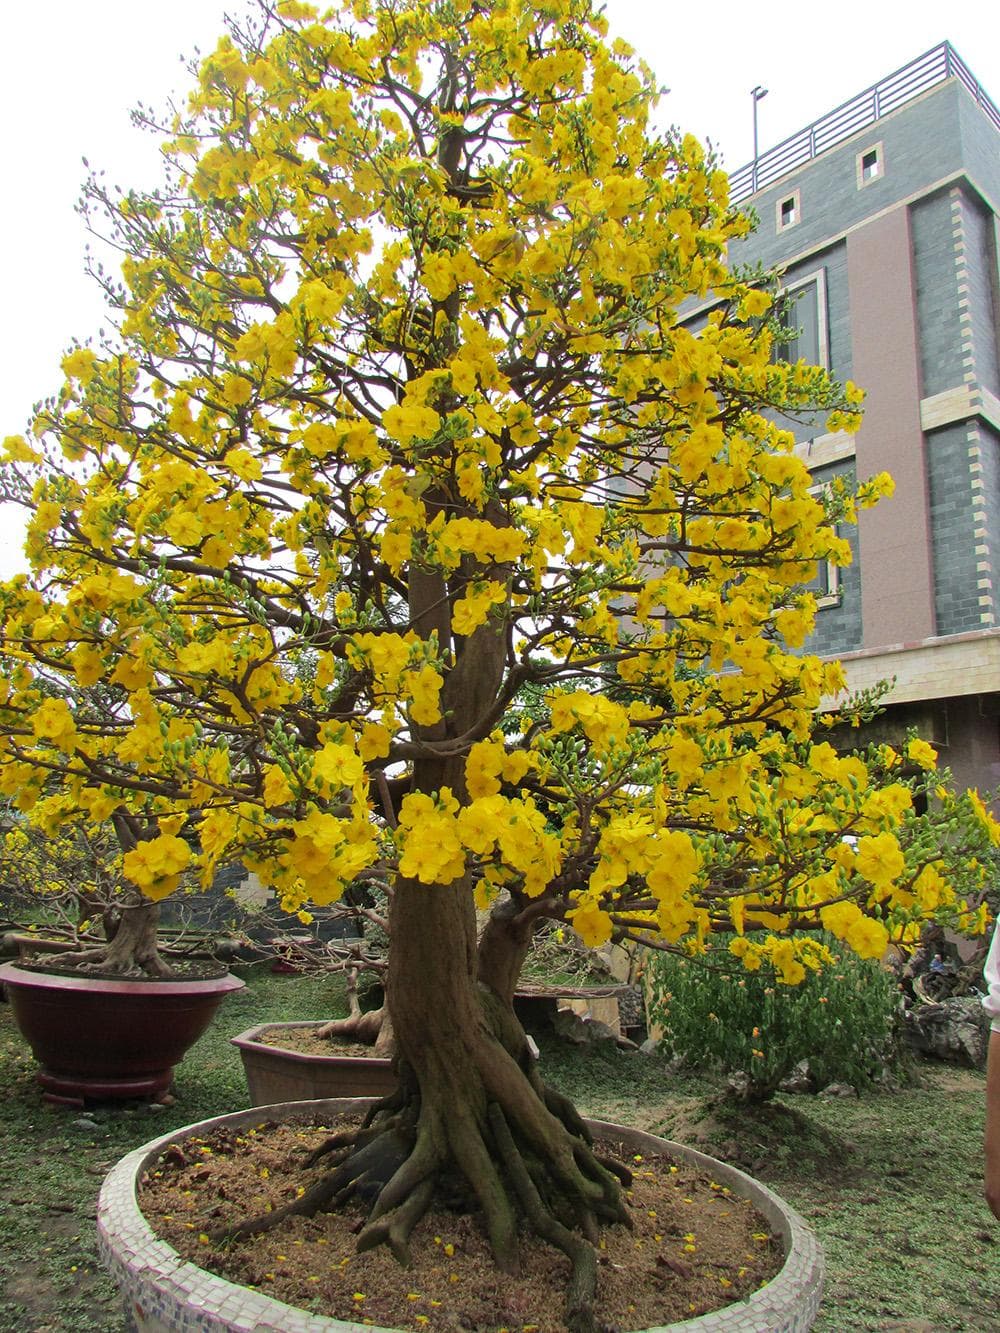 Mua bán sỉ lẻ cây mai vàng con giống miền tây chưng tết bonsai giá rẻ tại tphcm